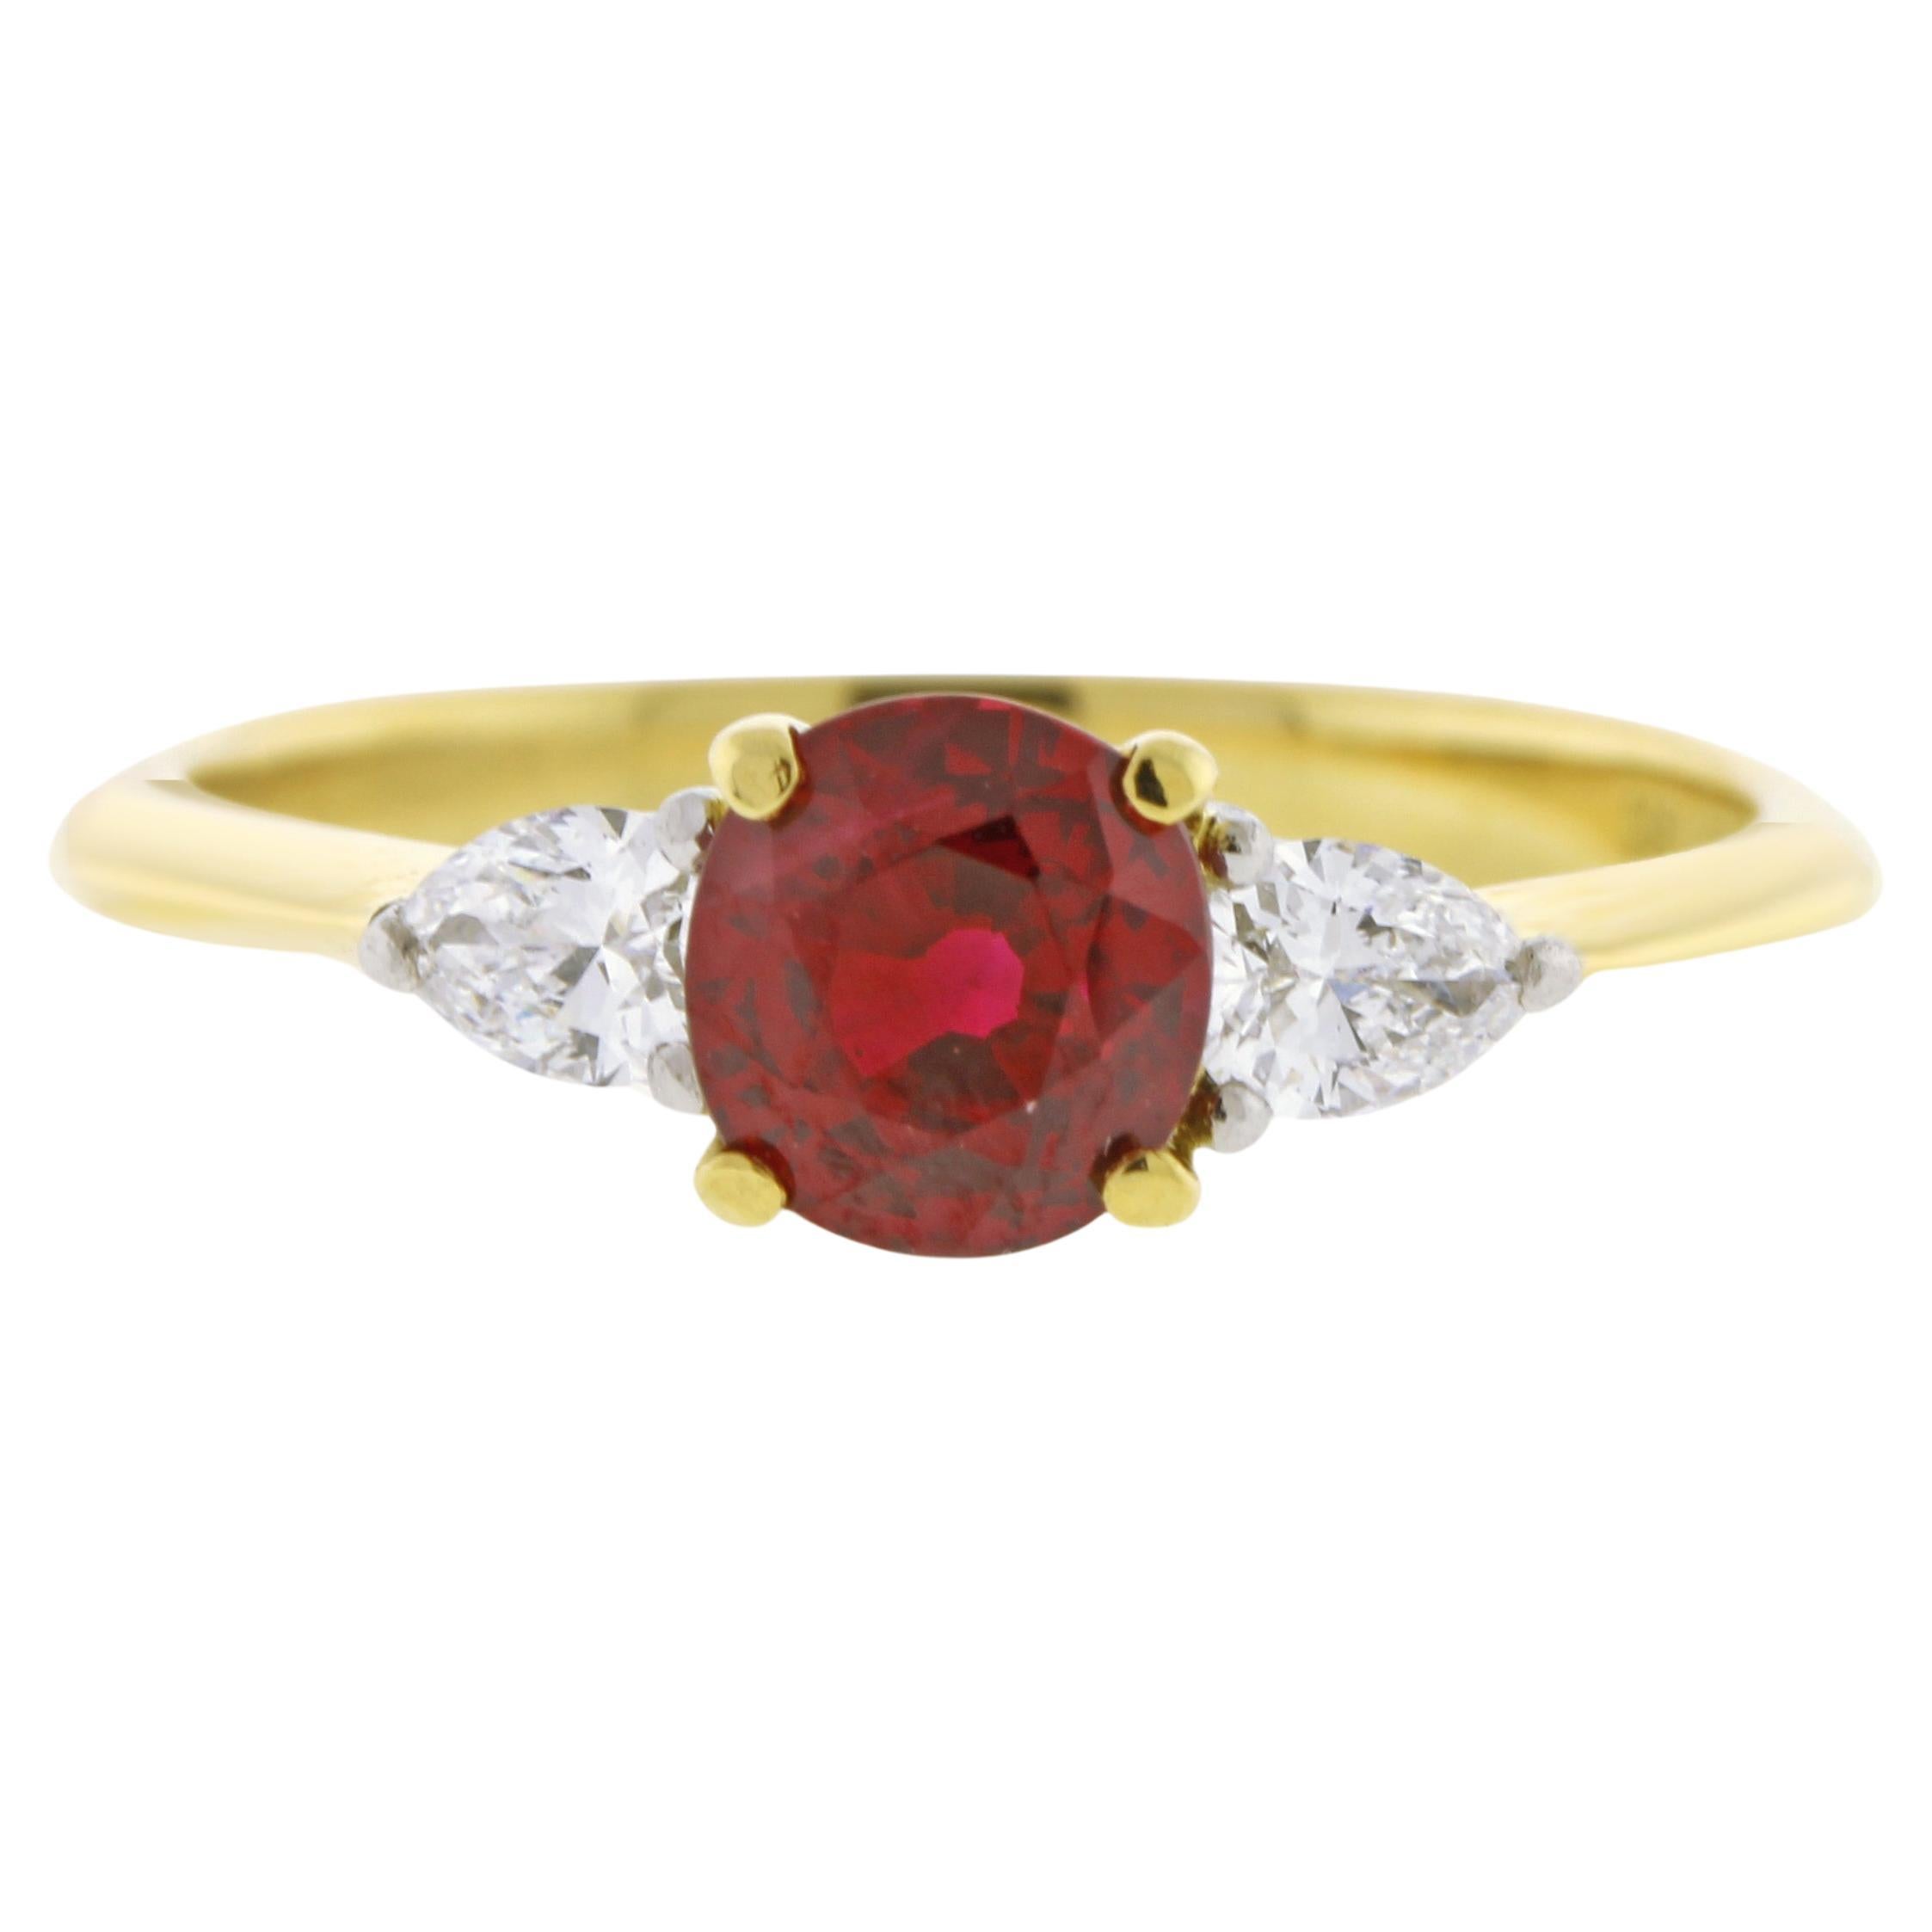 Tiffany & Co. Burma Ruby and Diamond Three-Stone Ring